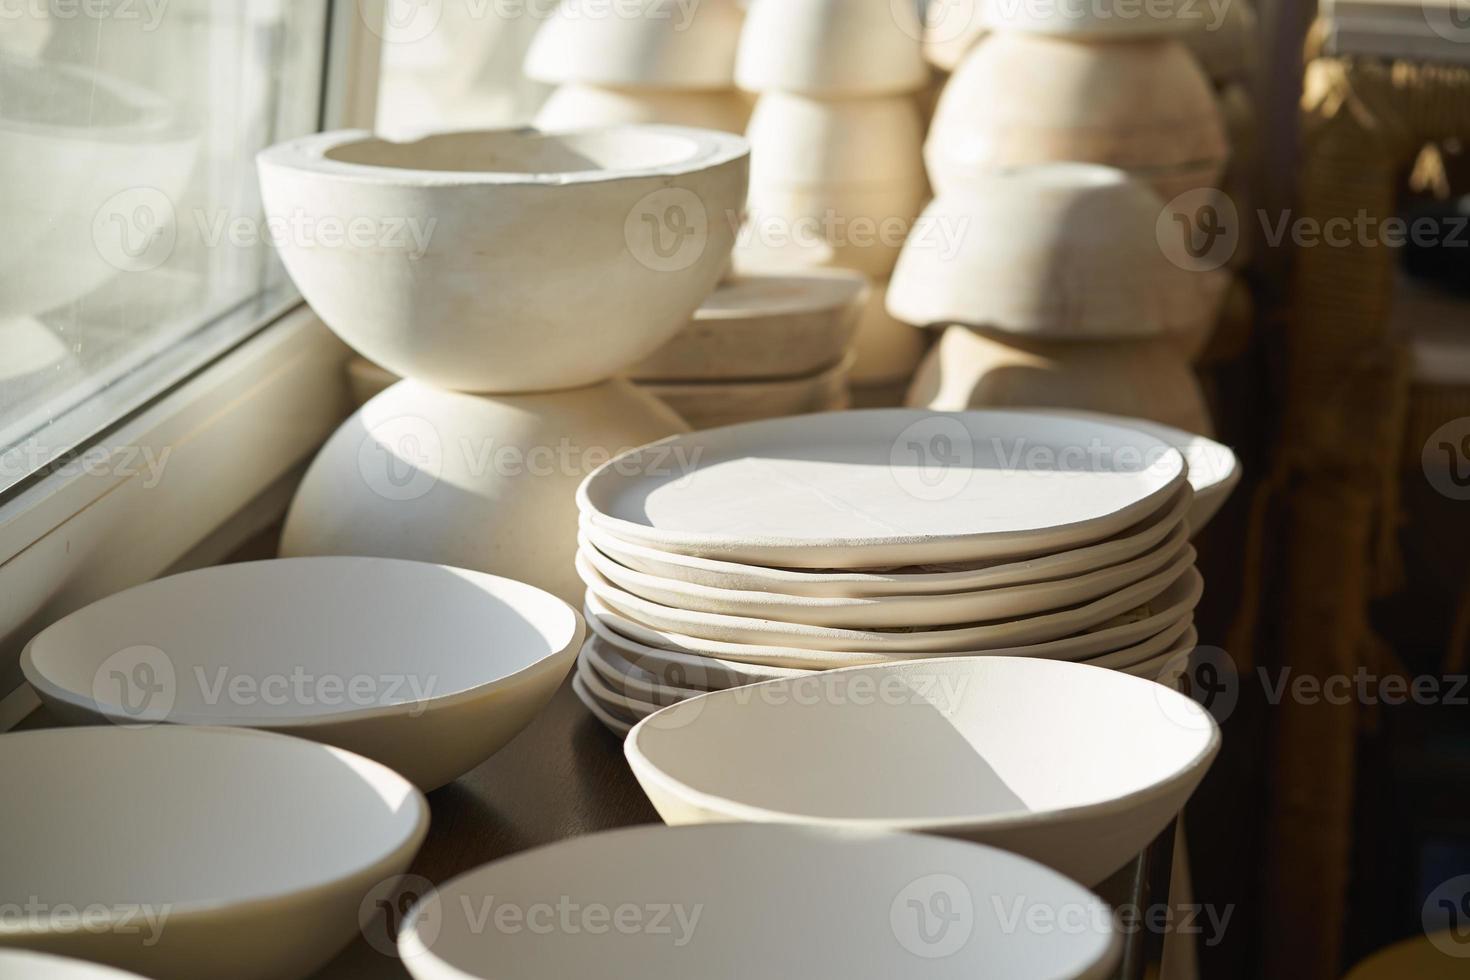 tillverkning av keramiska produkter, arbetsstycke. vacker bakgrund med keramik foto